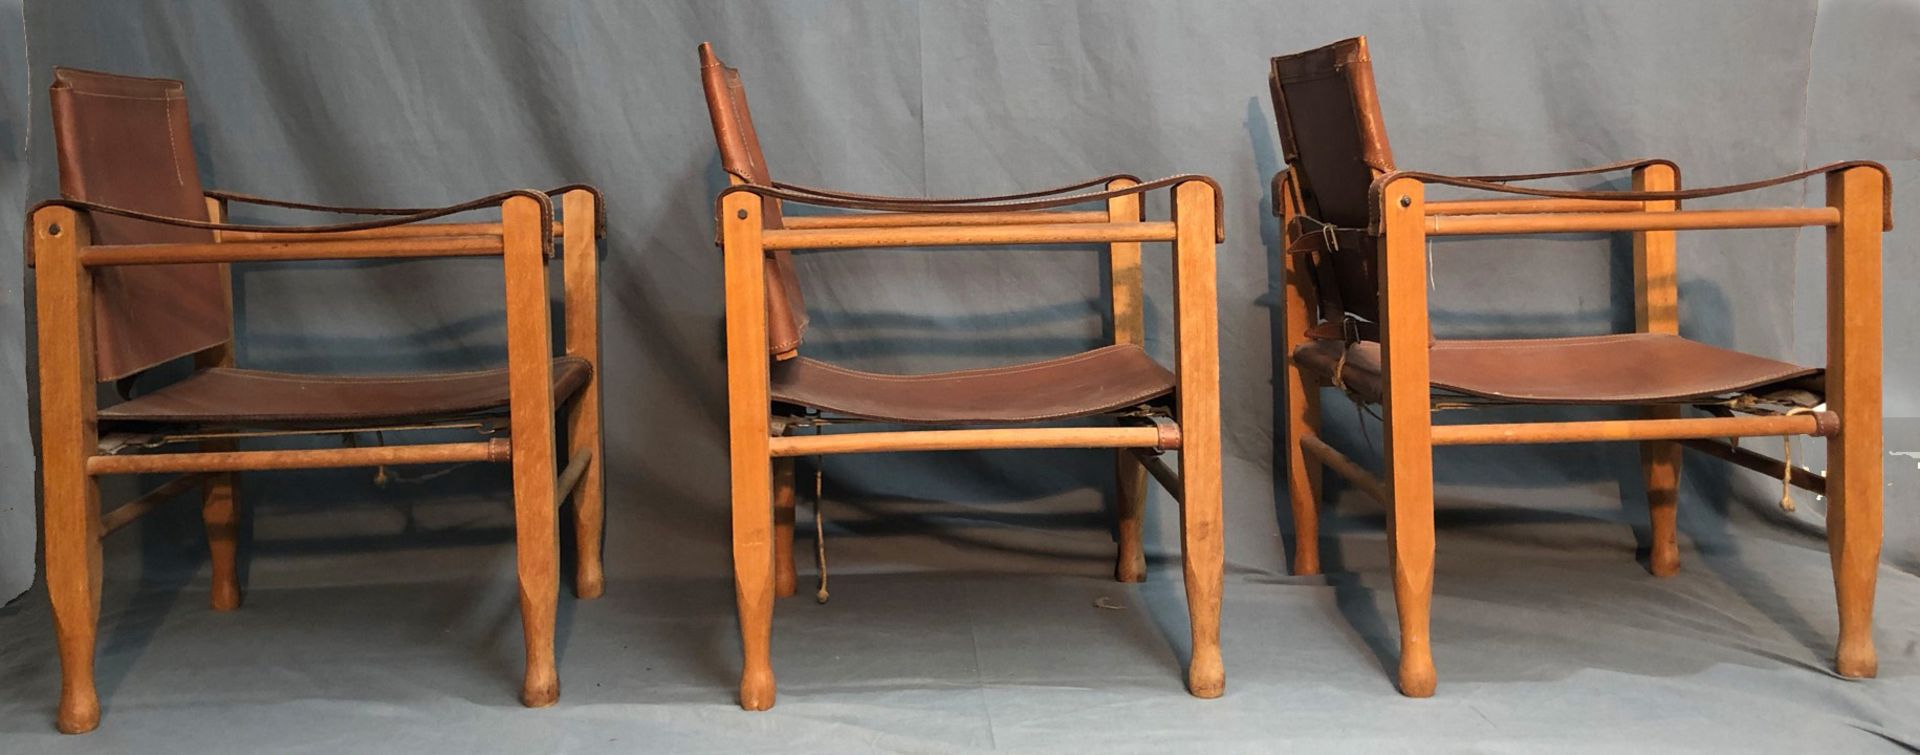 3 Safari Chair. Leder und Holz. Wohl Design von Wilhelm KIENZLE (1886-1958). - Bild 8 aus 13